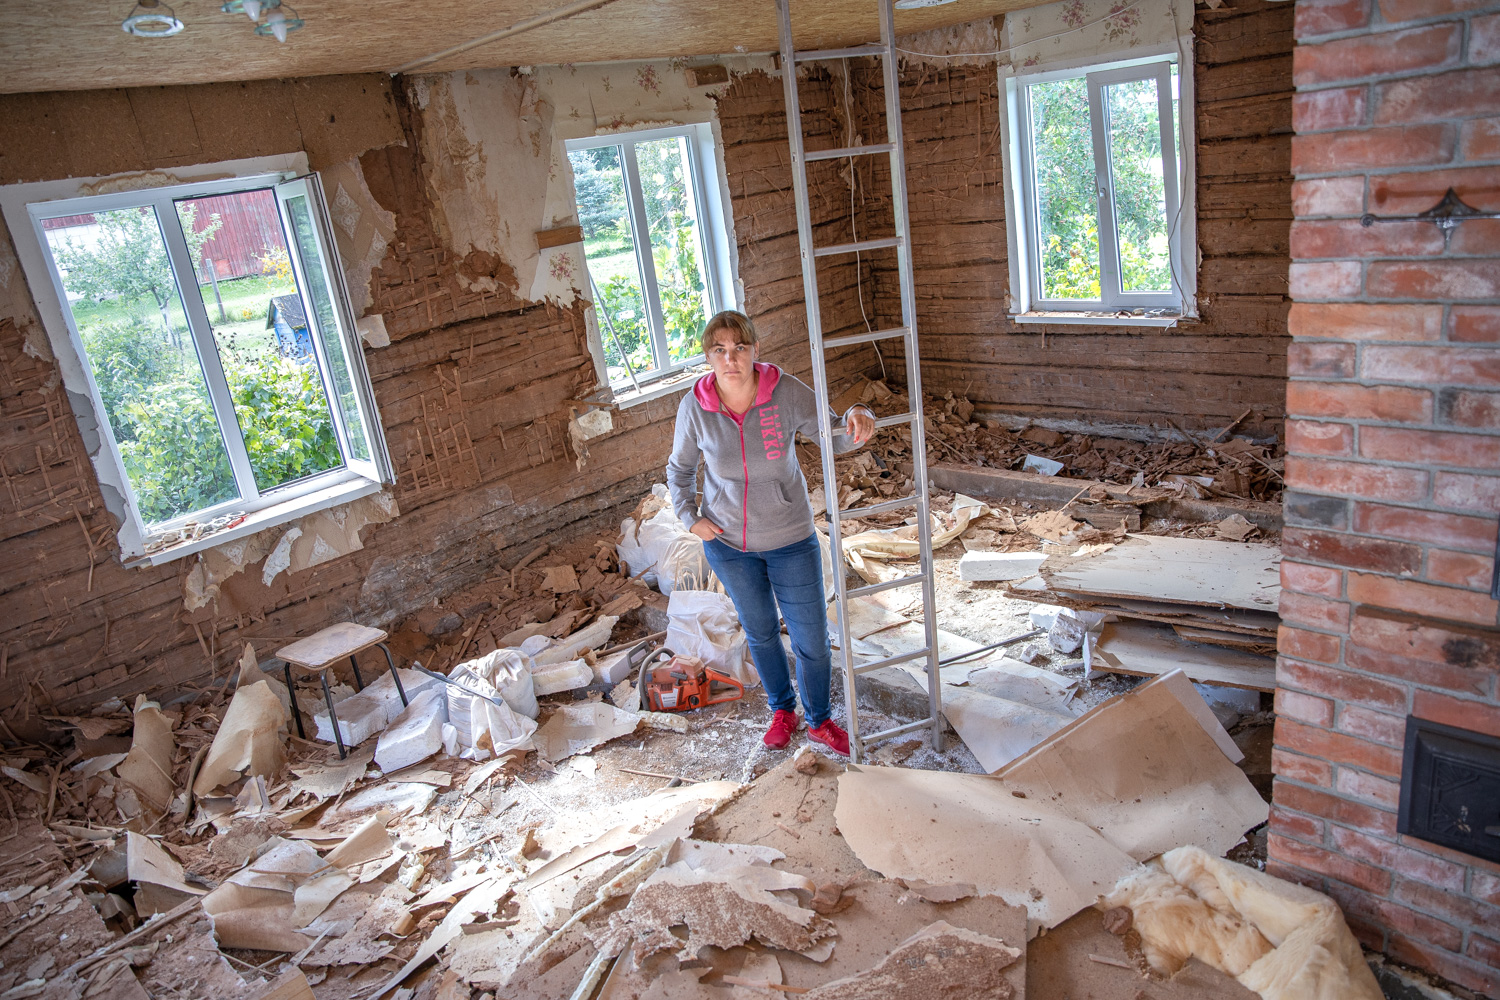 Vastseliinas oma lapsepõlvekodus elav Kristiina Saar seisab silmitsi majavammi tekitatud suure kahjuga. Foto: AIGAR NAGEL